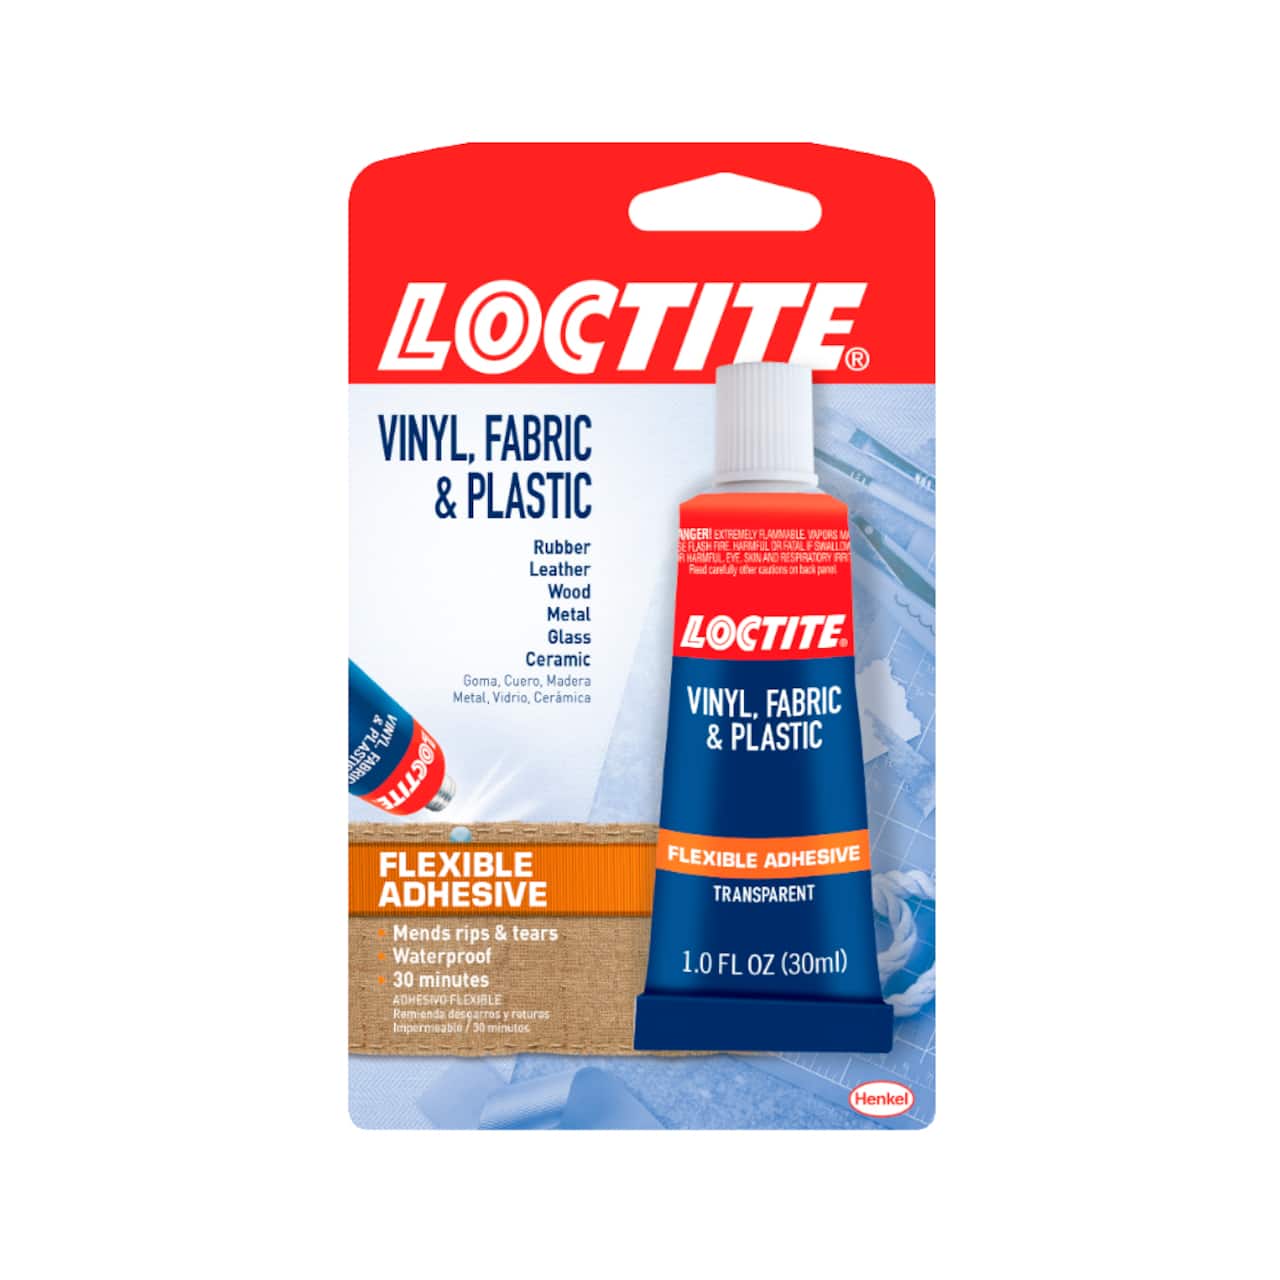 Loctite Vinyl, Fabric & Plastic Repair - 1 fl oz